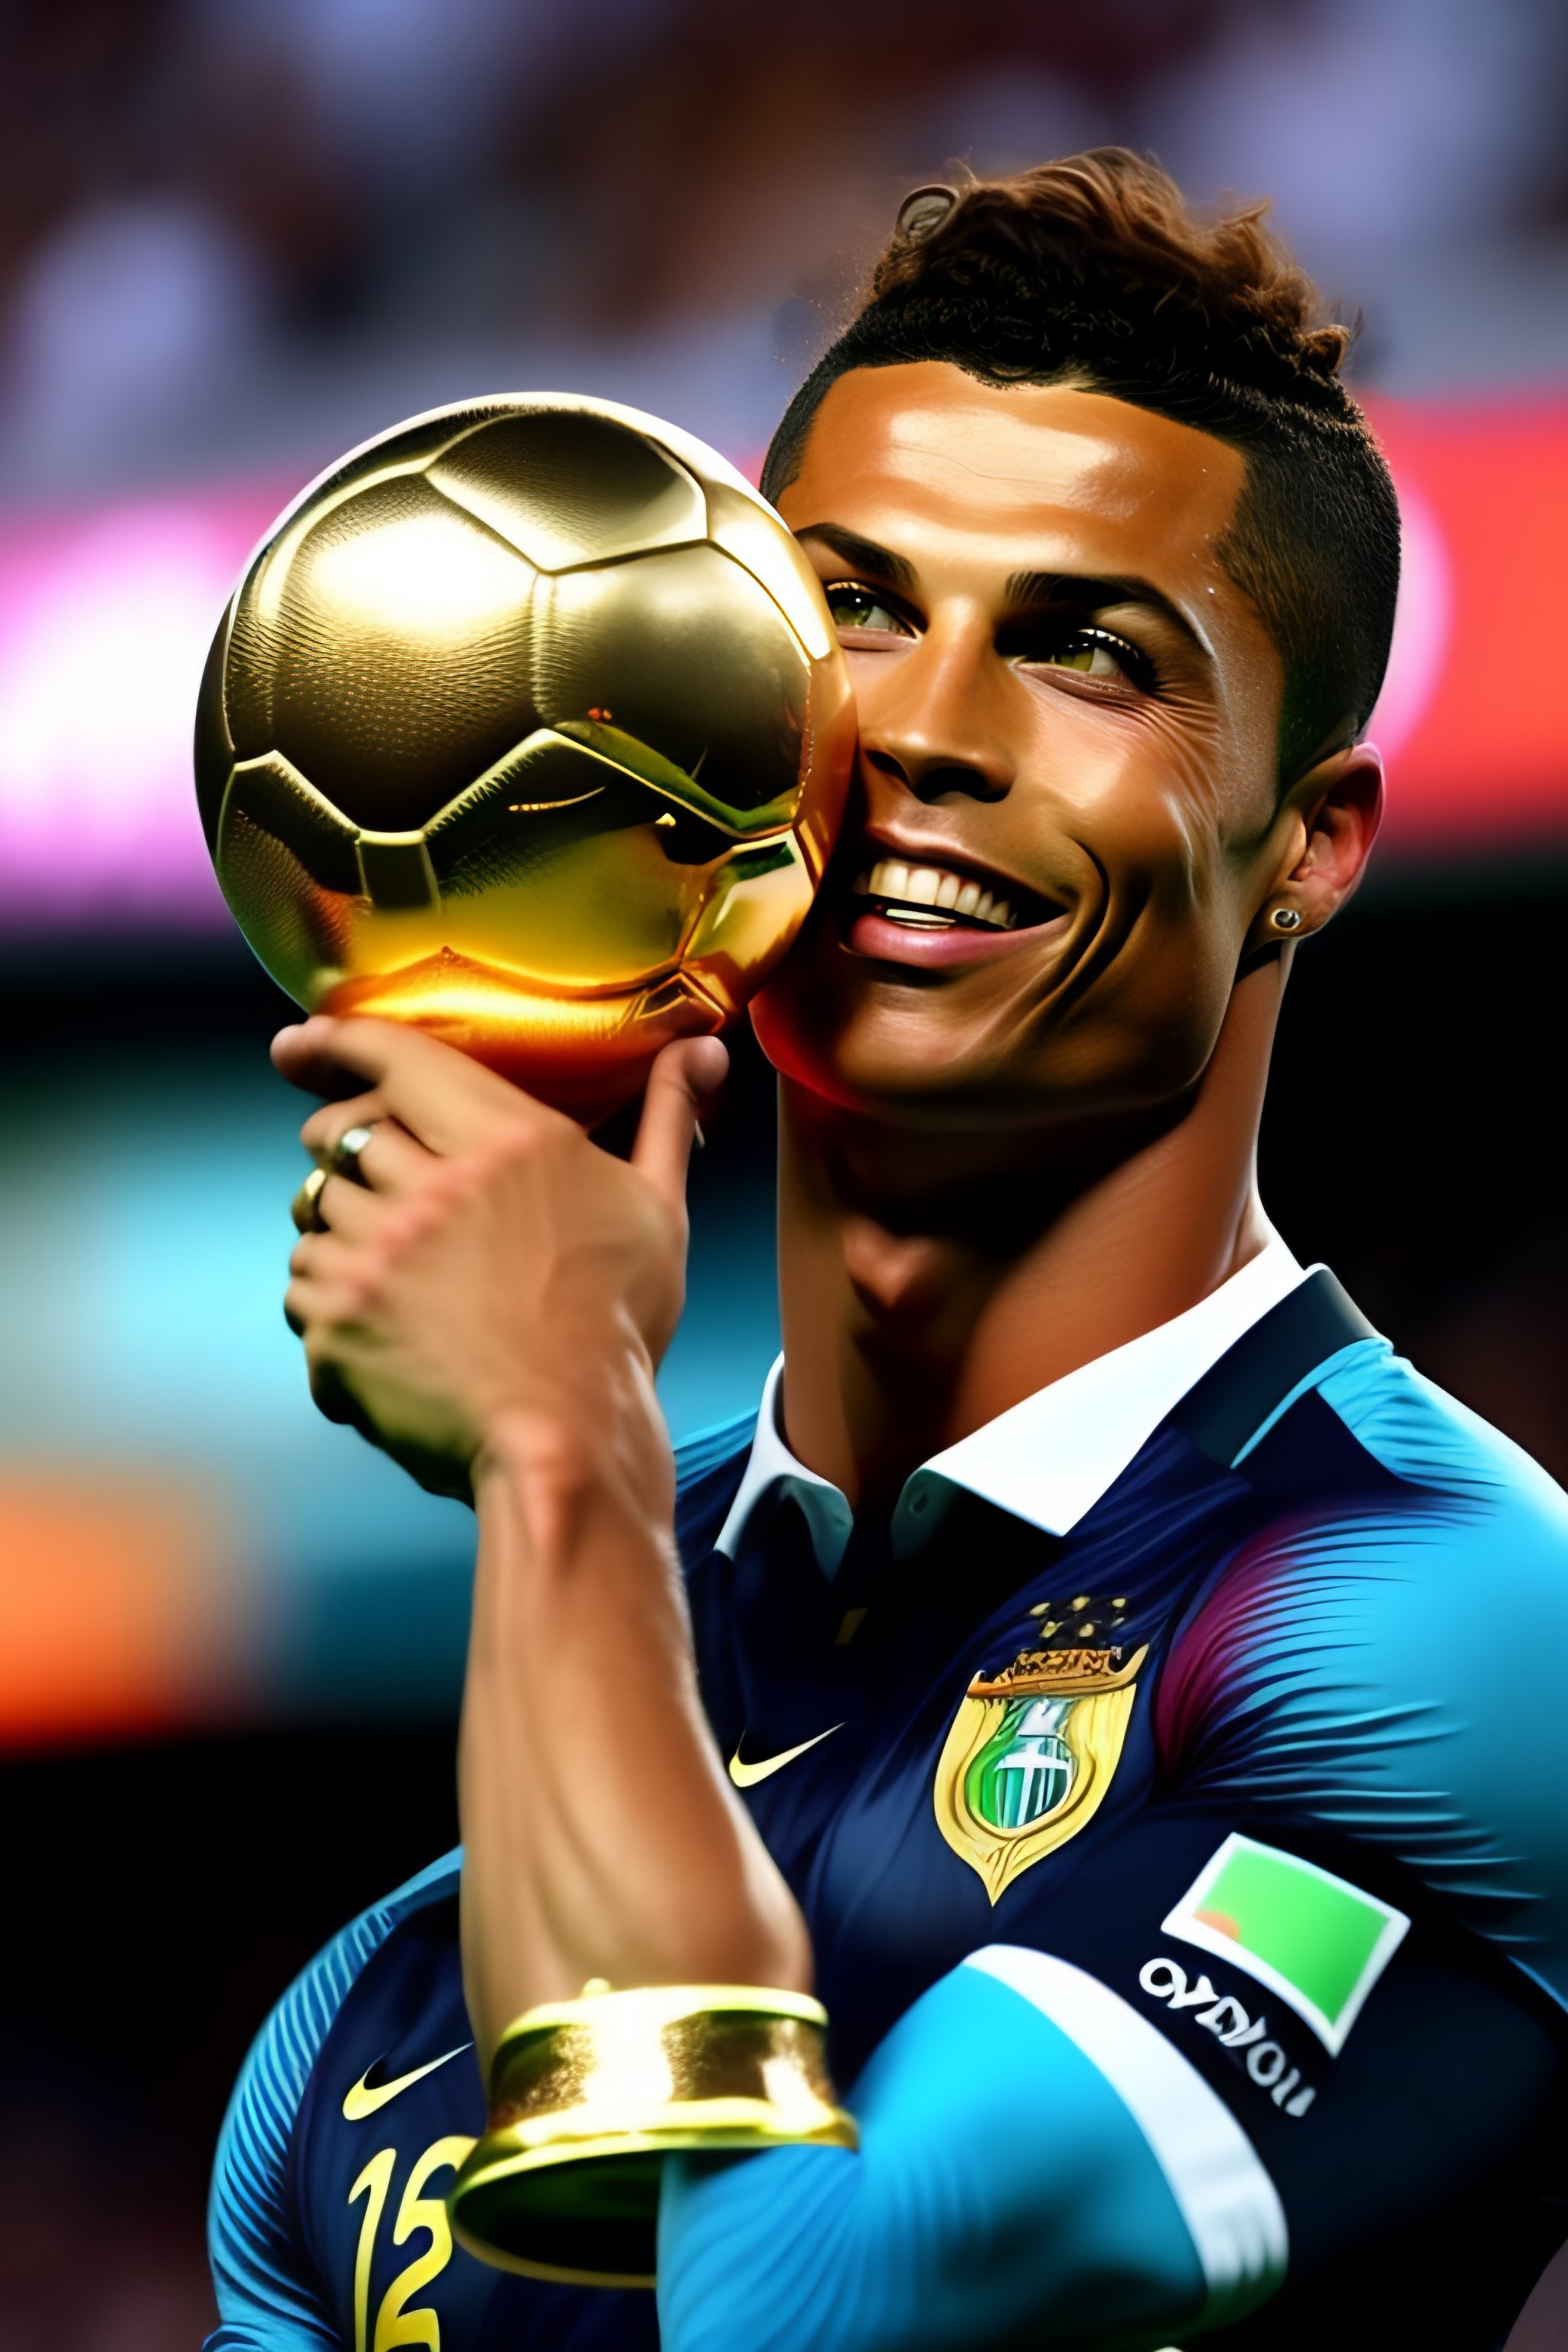 C ronaldo nâng cúp vô địch thế giới trên Lexica: Hình ảnh C Ronaldo nâng cúp vô địch thế giới trên Lexica đang chờ đợi bạn trải nghiệm. Hãy cảm nhận lại khoảnh khắc lịch sử đó của C Ronaldo và đội tuyển Bồ Đào Nha thông qua hình ảnh chất lượng HD và sống động trên màn hình thiết bị của bạn.